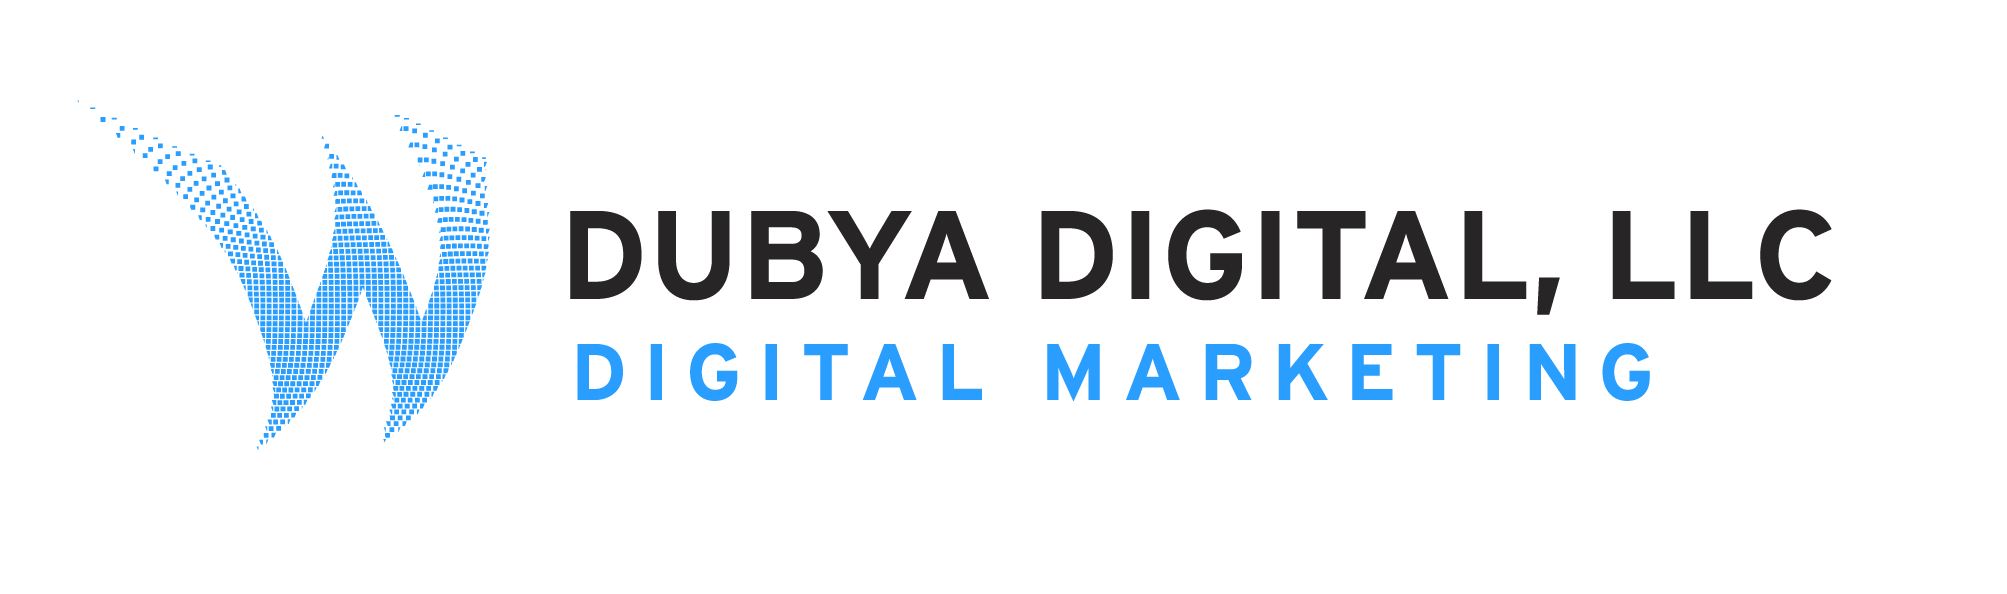 Dubya Digital LLC Logo